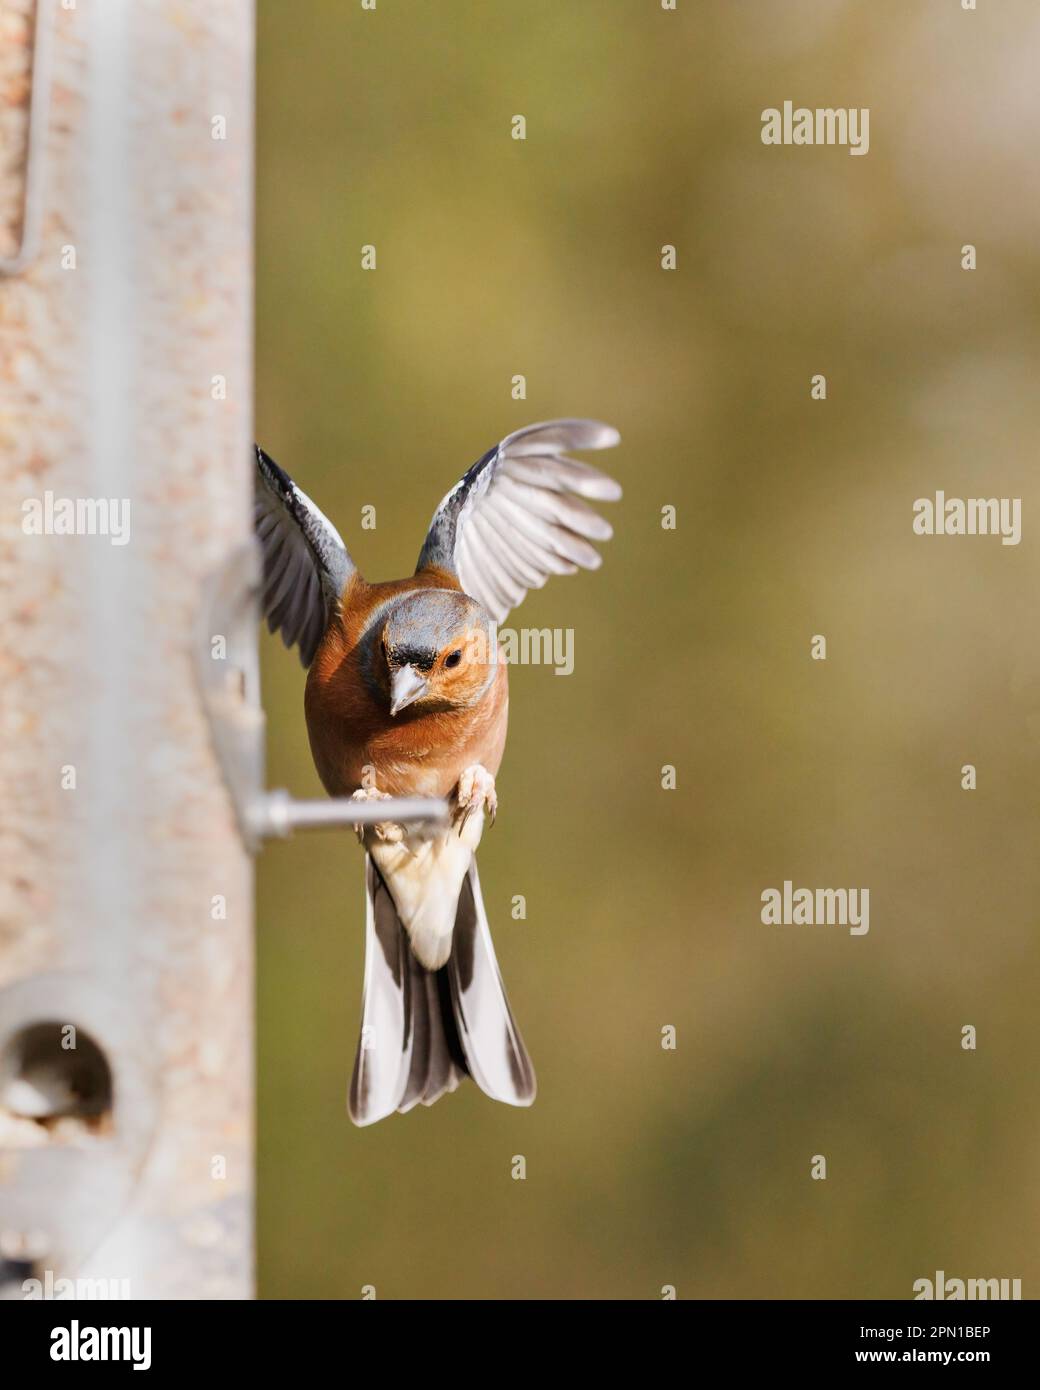 Männlicher Vogel flattert mit Flügeln, während er auf der Saatgutzuführung landet Stockfoto